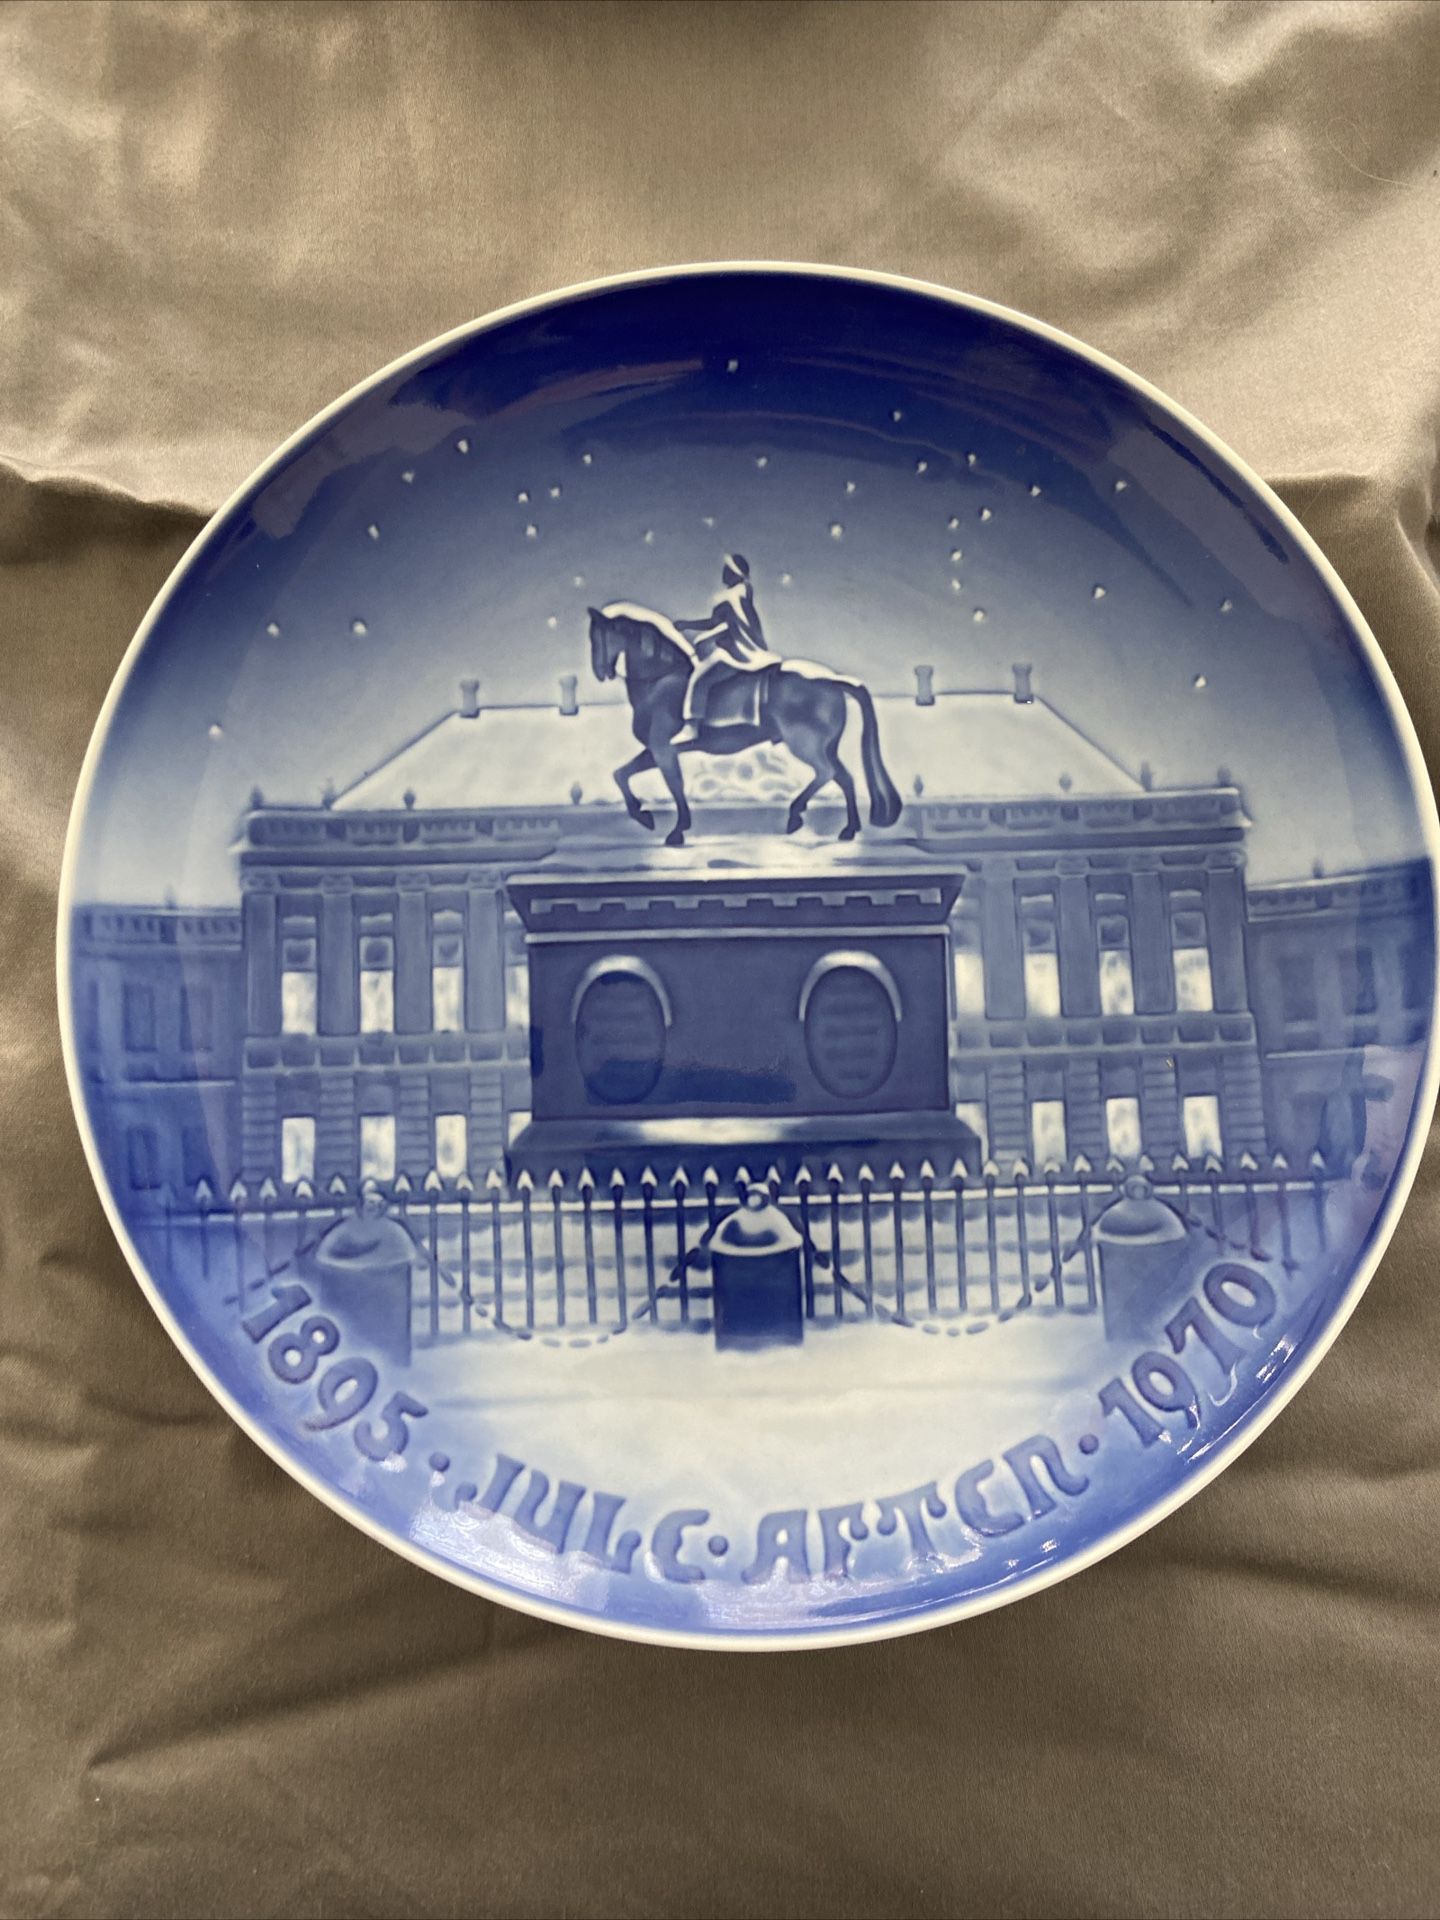 Copenhagen Porcelain Plate Collection